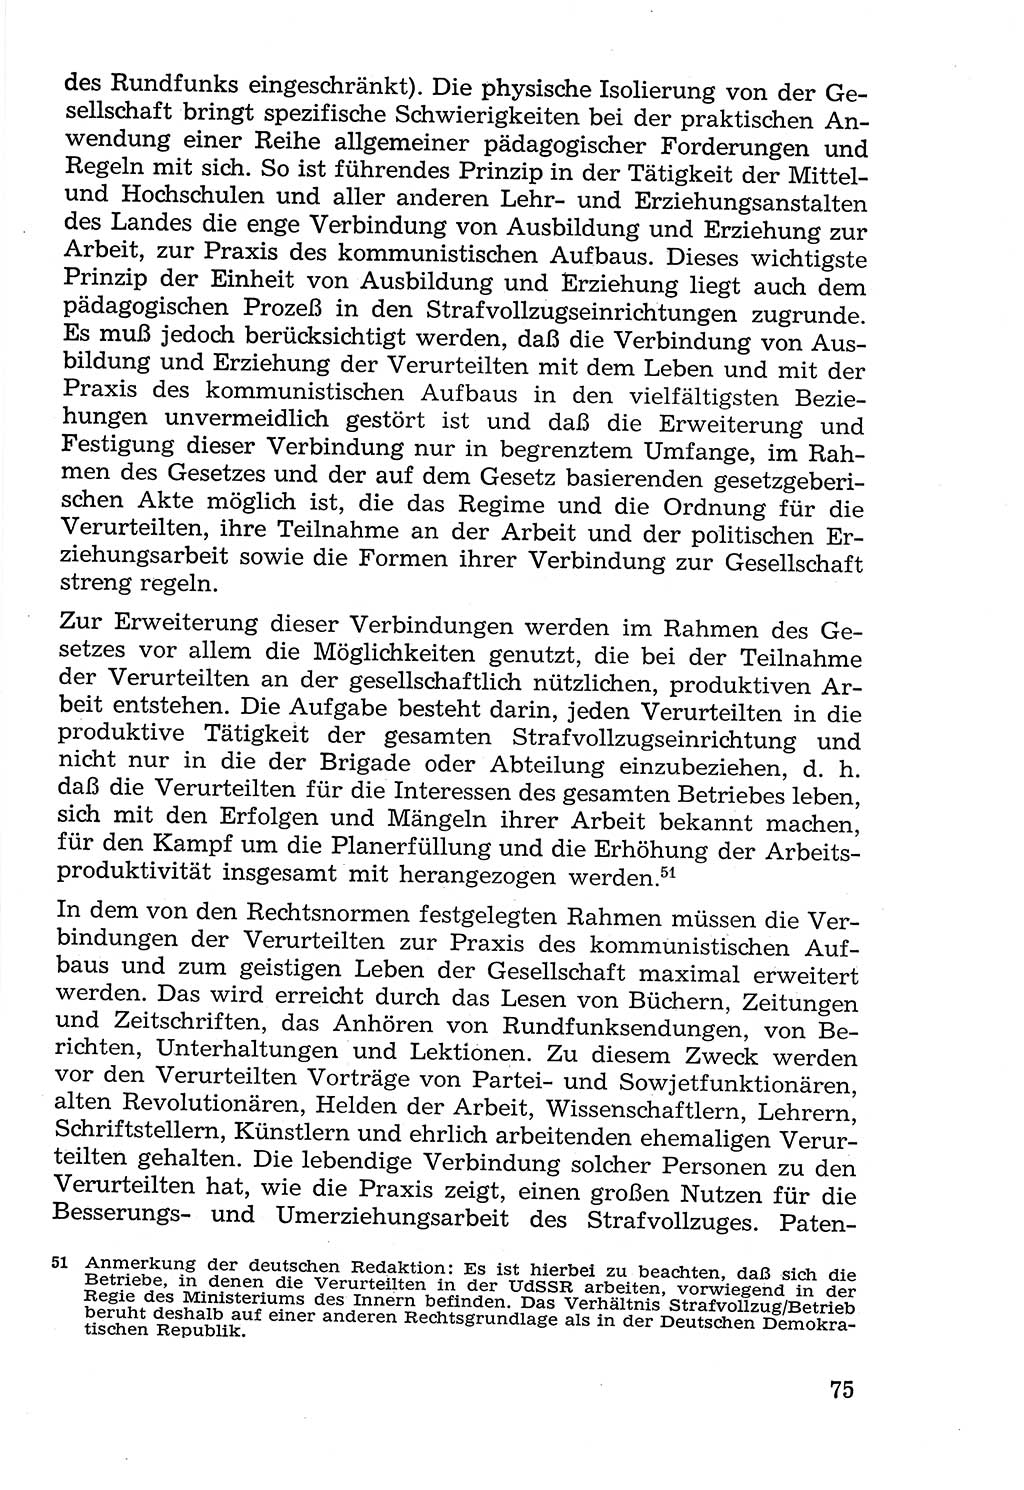 Lehrbuch der Strafvollzugspädagogik [Deutsche Demokratische Republik (DDR)] 1969, Seite 75 (Lb. SV-Pd. DDR 1969, S. 75)